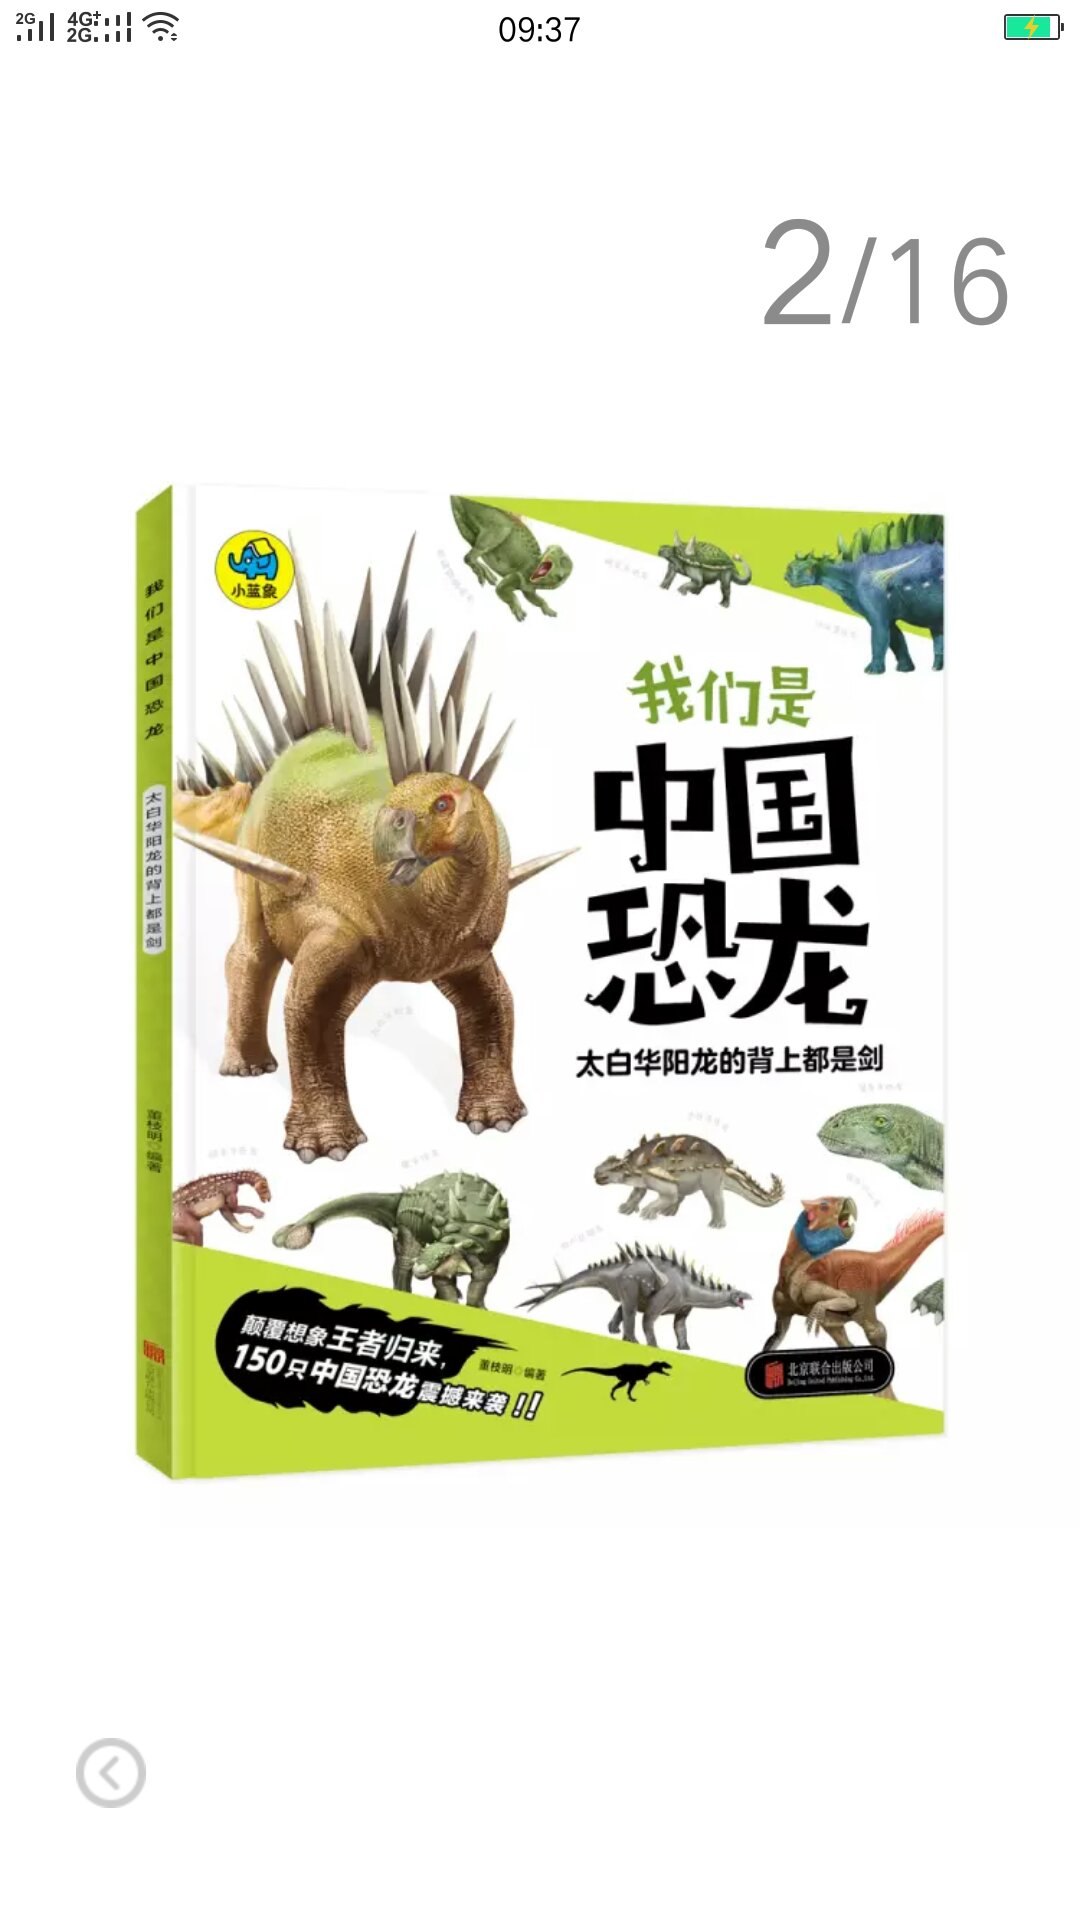 孩子喜欢恐龙，多买恐龙书看看，还可以吧！！